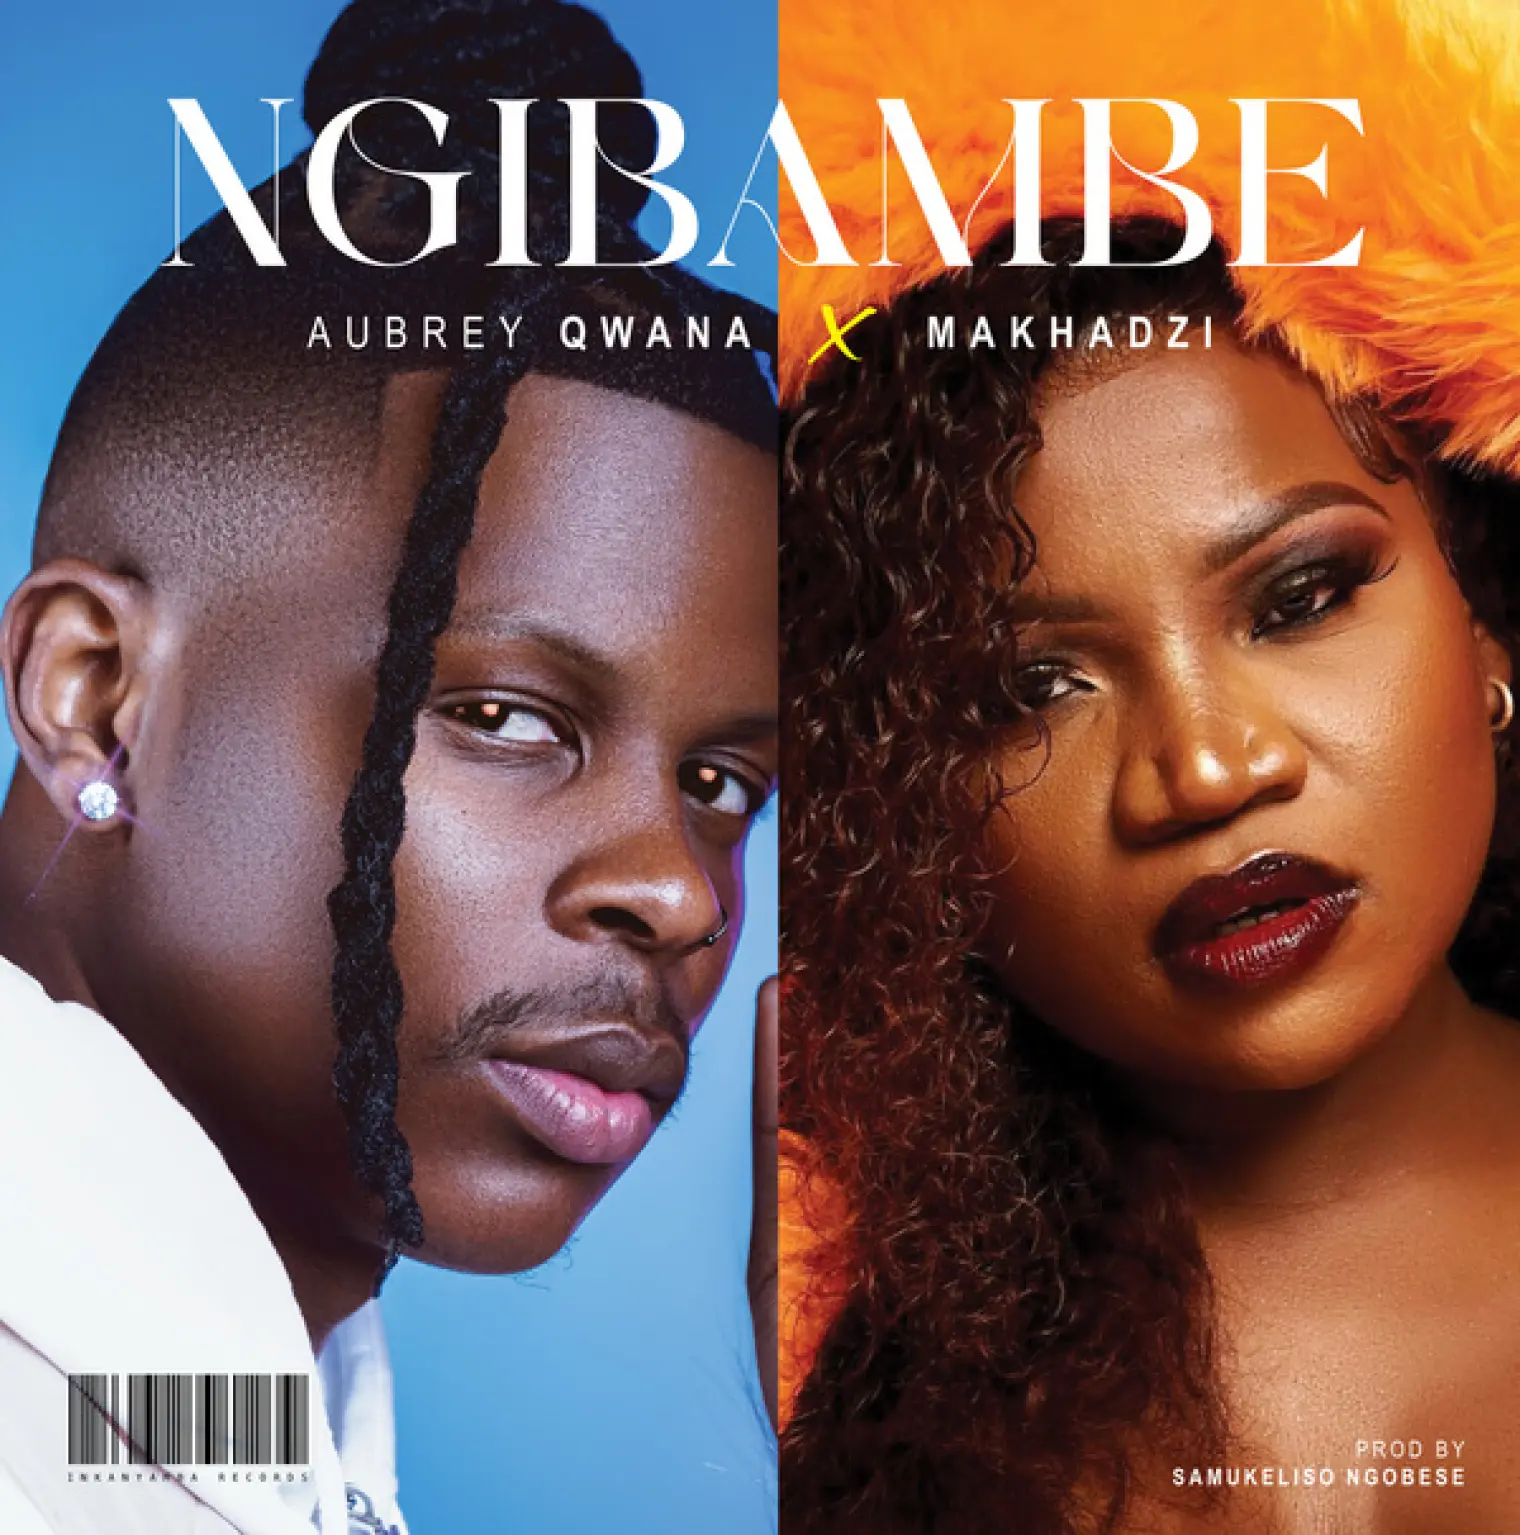 Ngibambe -  Aubrey Qwana 